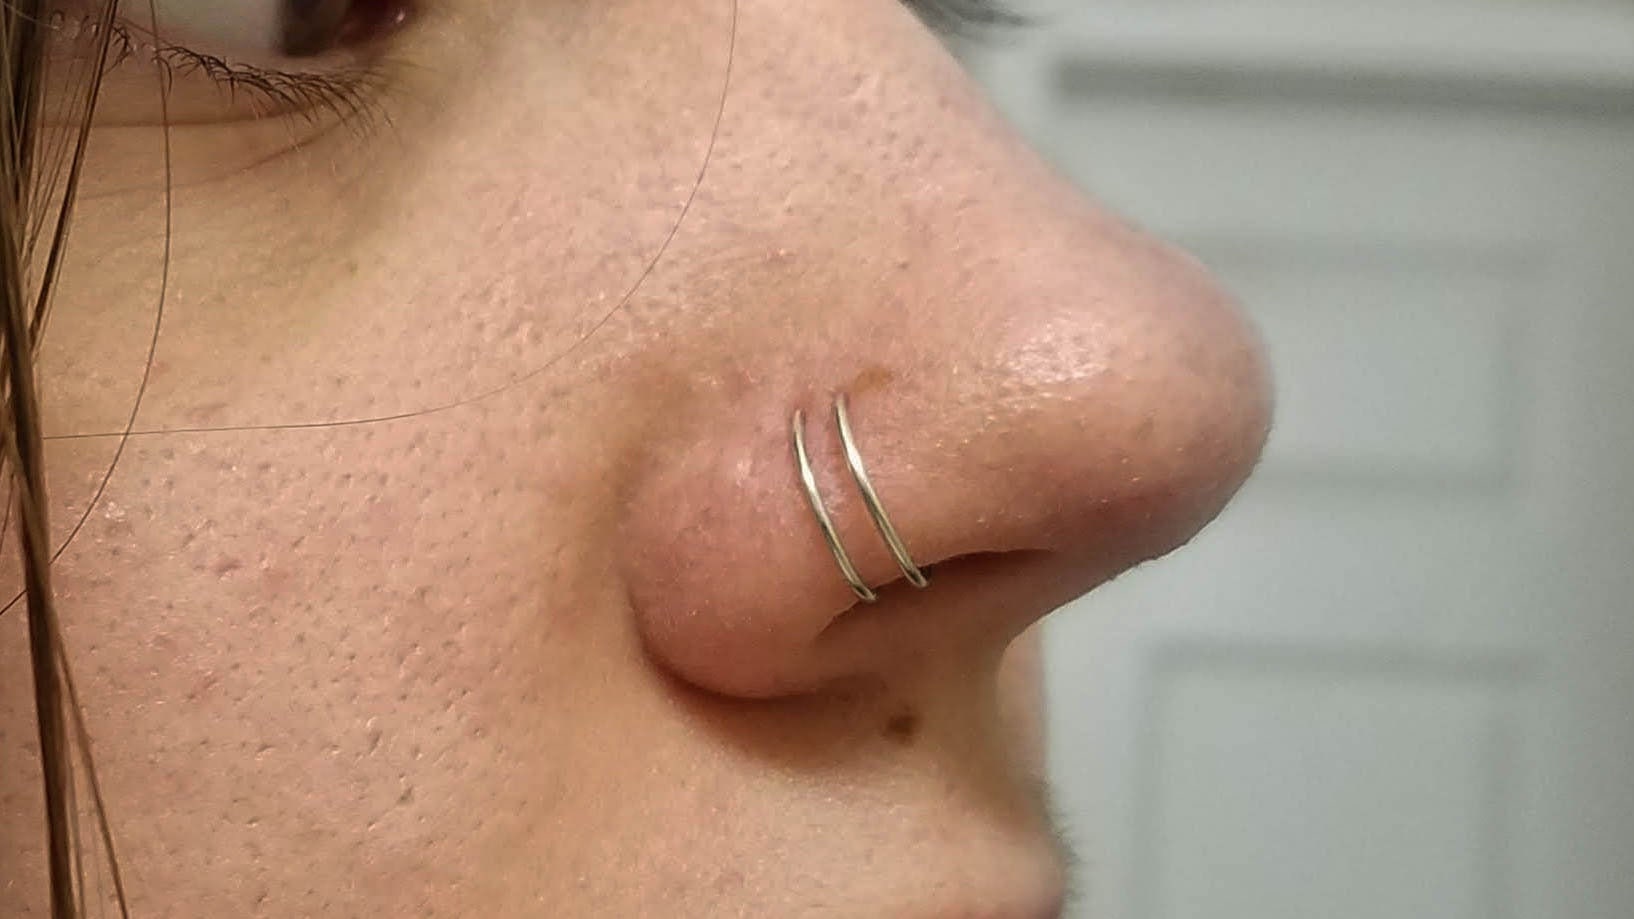 Adjustable Natural Healing Stone Fake Nose Ring no Piercing